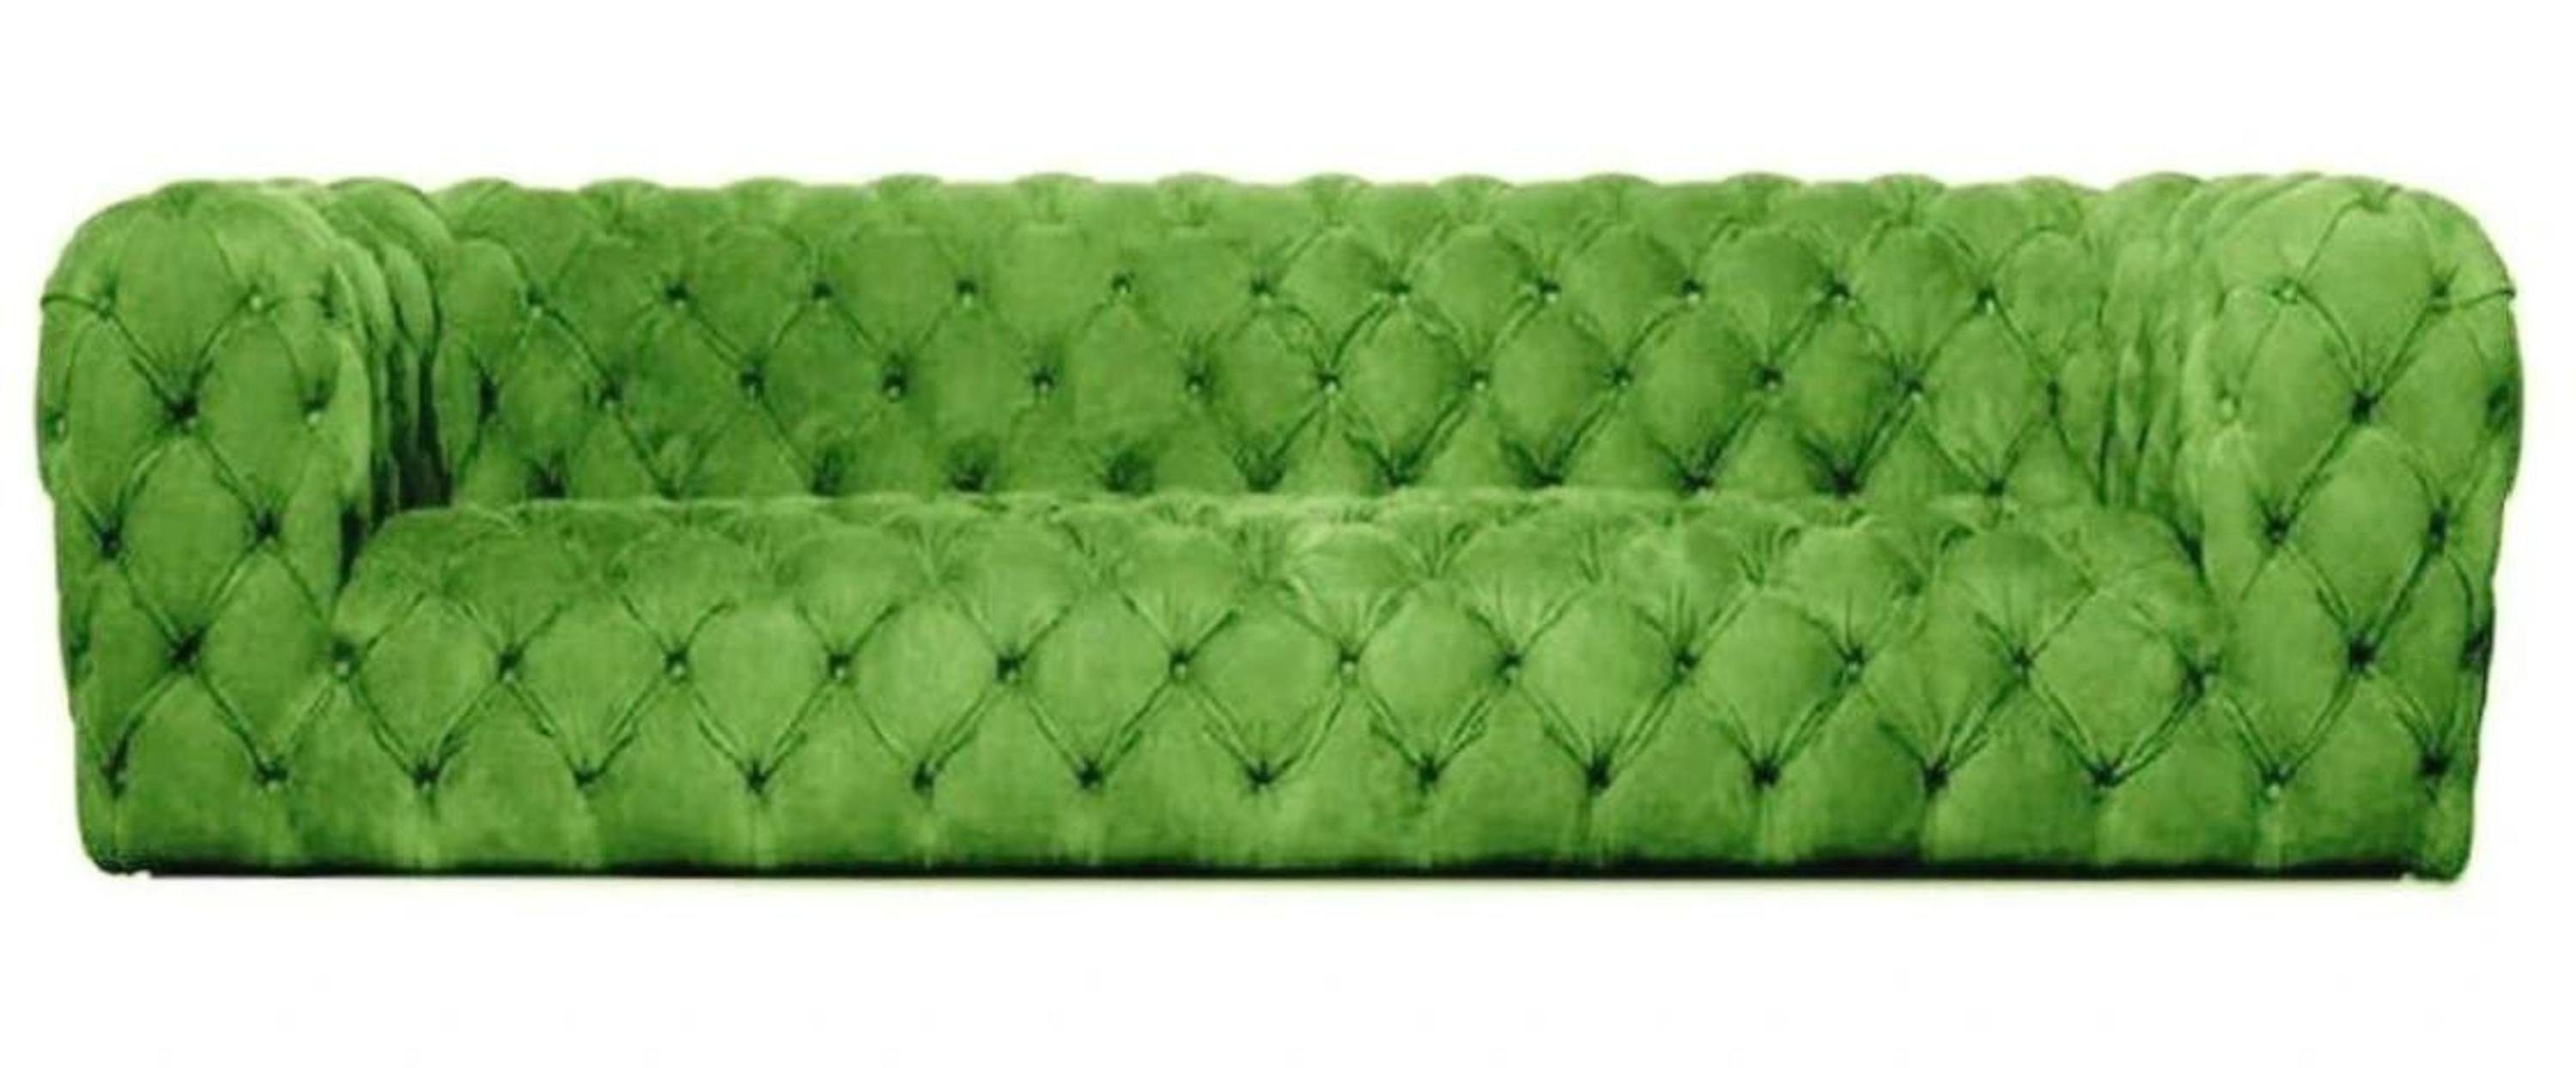 JVmoebel Chesterfield-Sofa, Gelbe Chesterfield Couch Viersitzer xxl big sofa gemütliche Grün